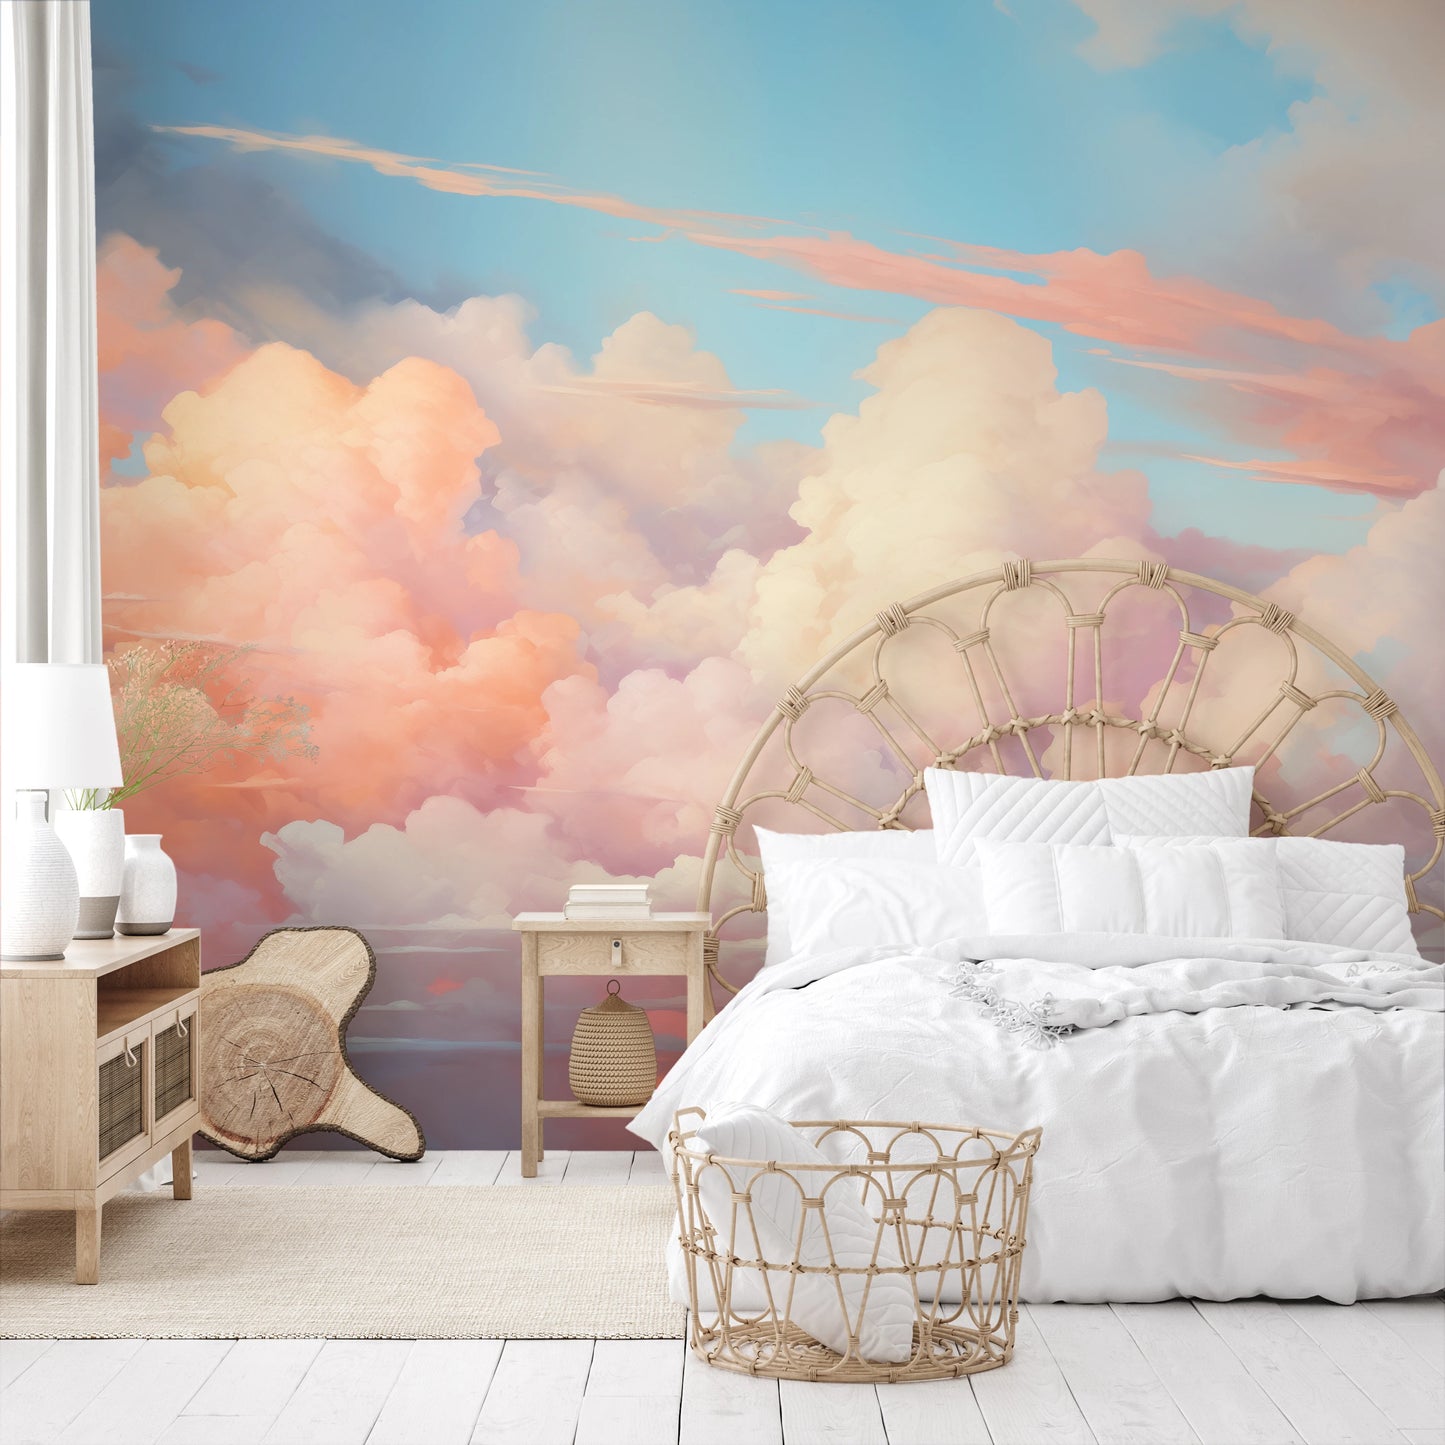 Fototapeta artystyczna o nazwie Cotton Candy Skies pokazana w aranżacji wnętrza.